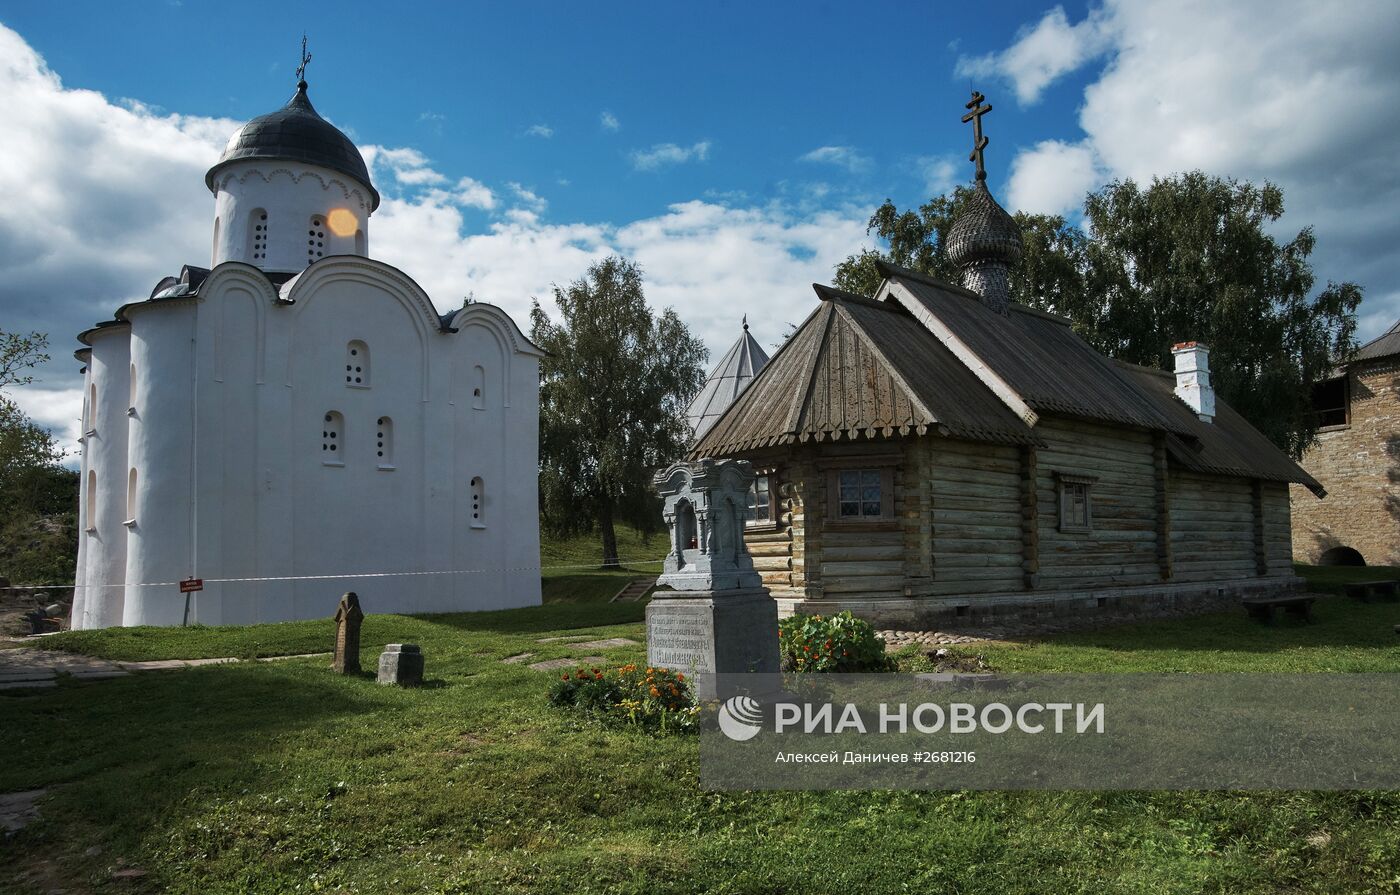 Музей-заповедник "Старая Ладога" в Ленинградской области